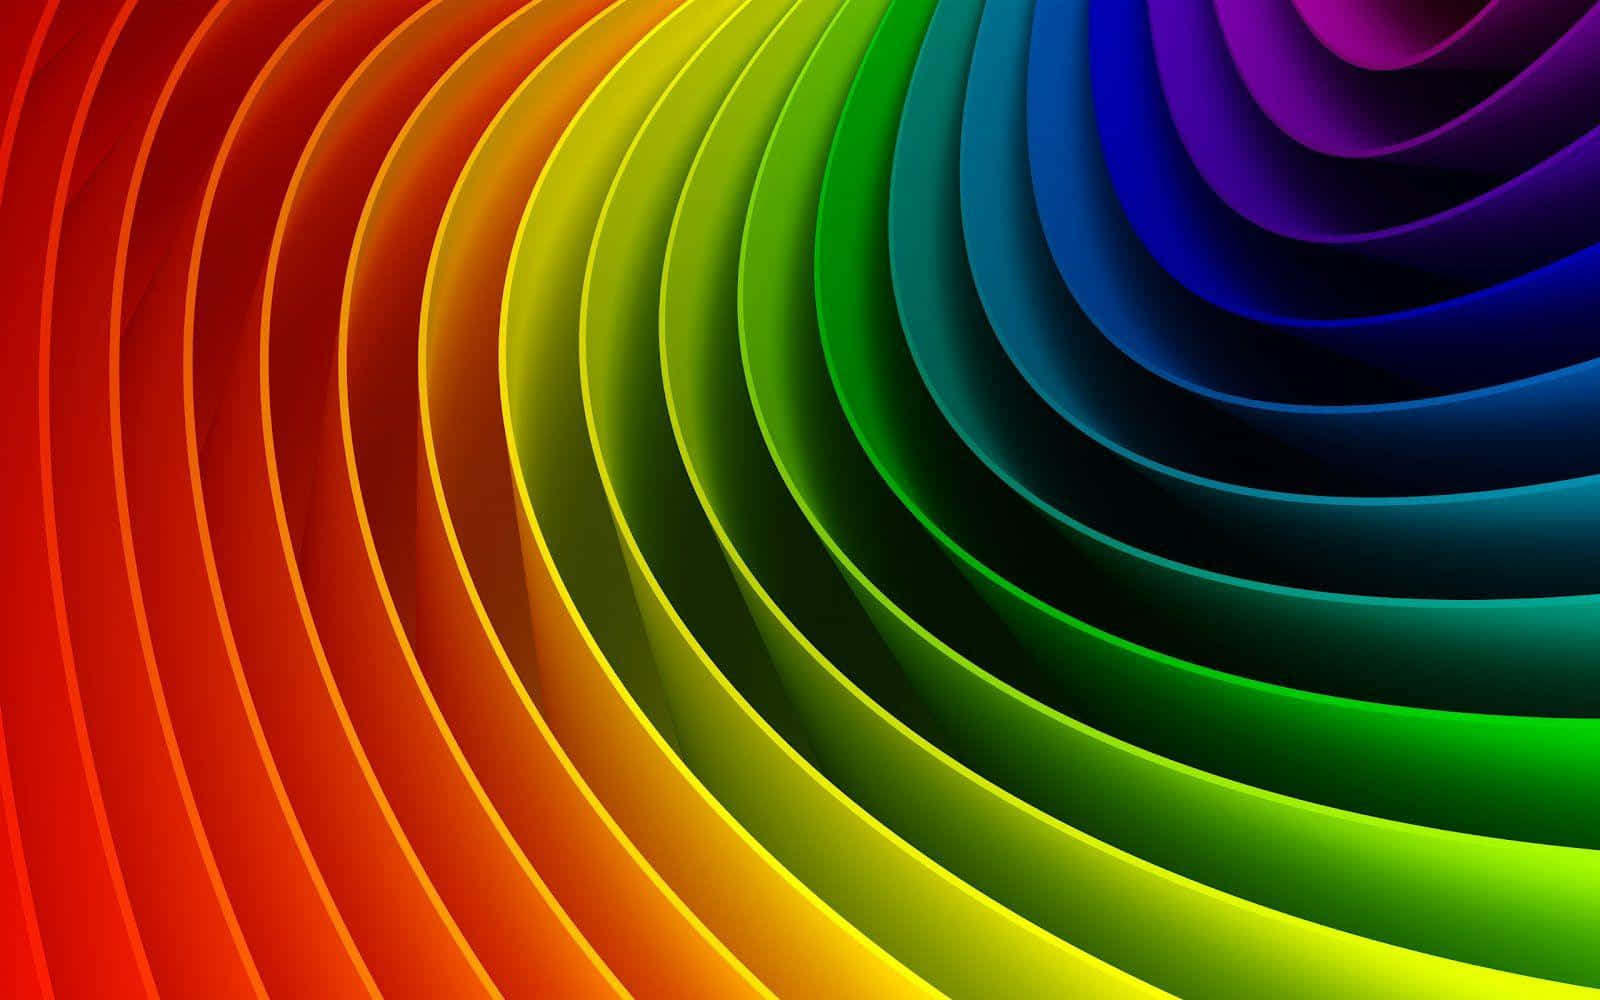 Unosfondo Multicolore Vibrante Con Un Motivo Che Ricorda Una Spirale Ipnotica.